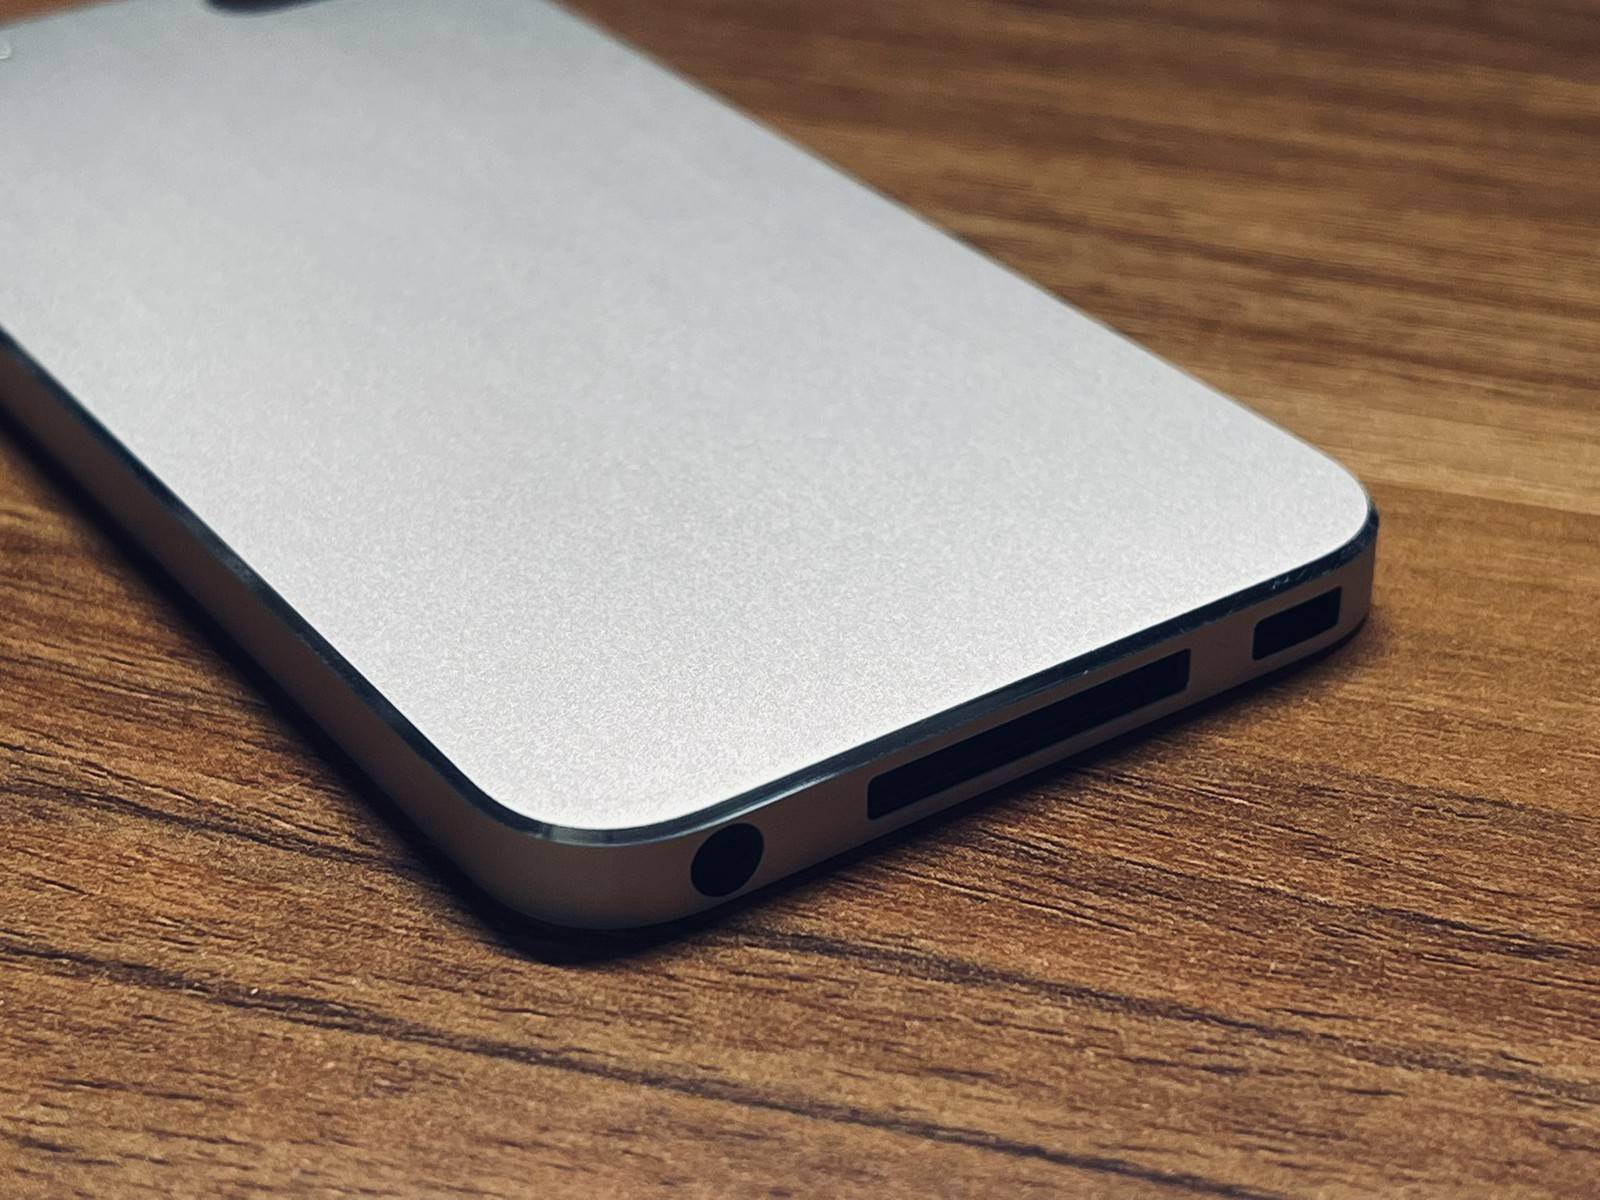 第五代iPod touch原型机曝光采用边缘倒角设计_苹果